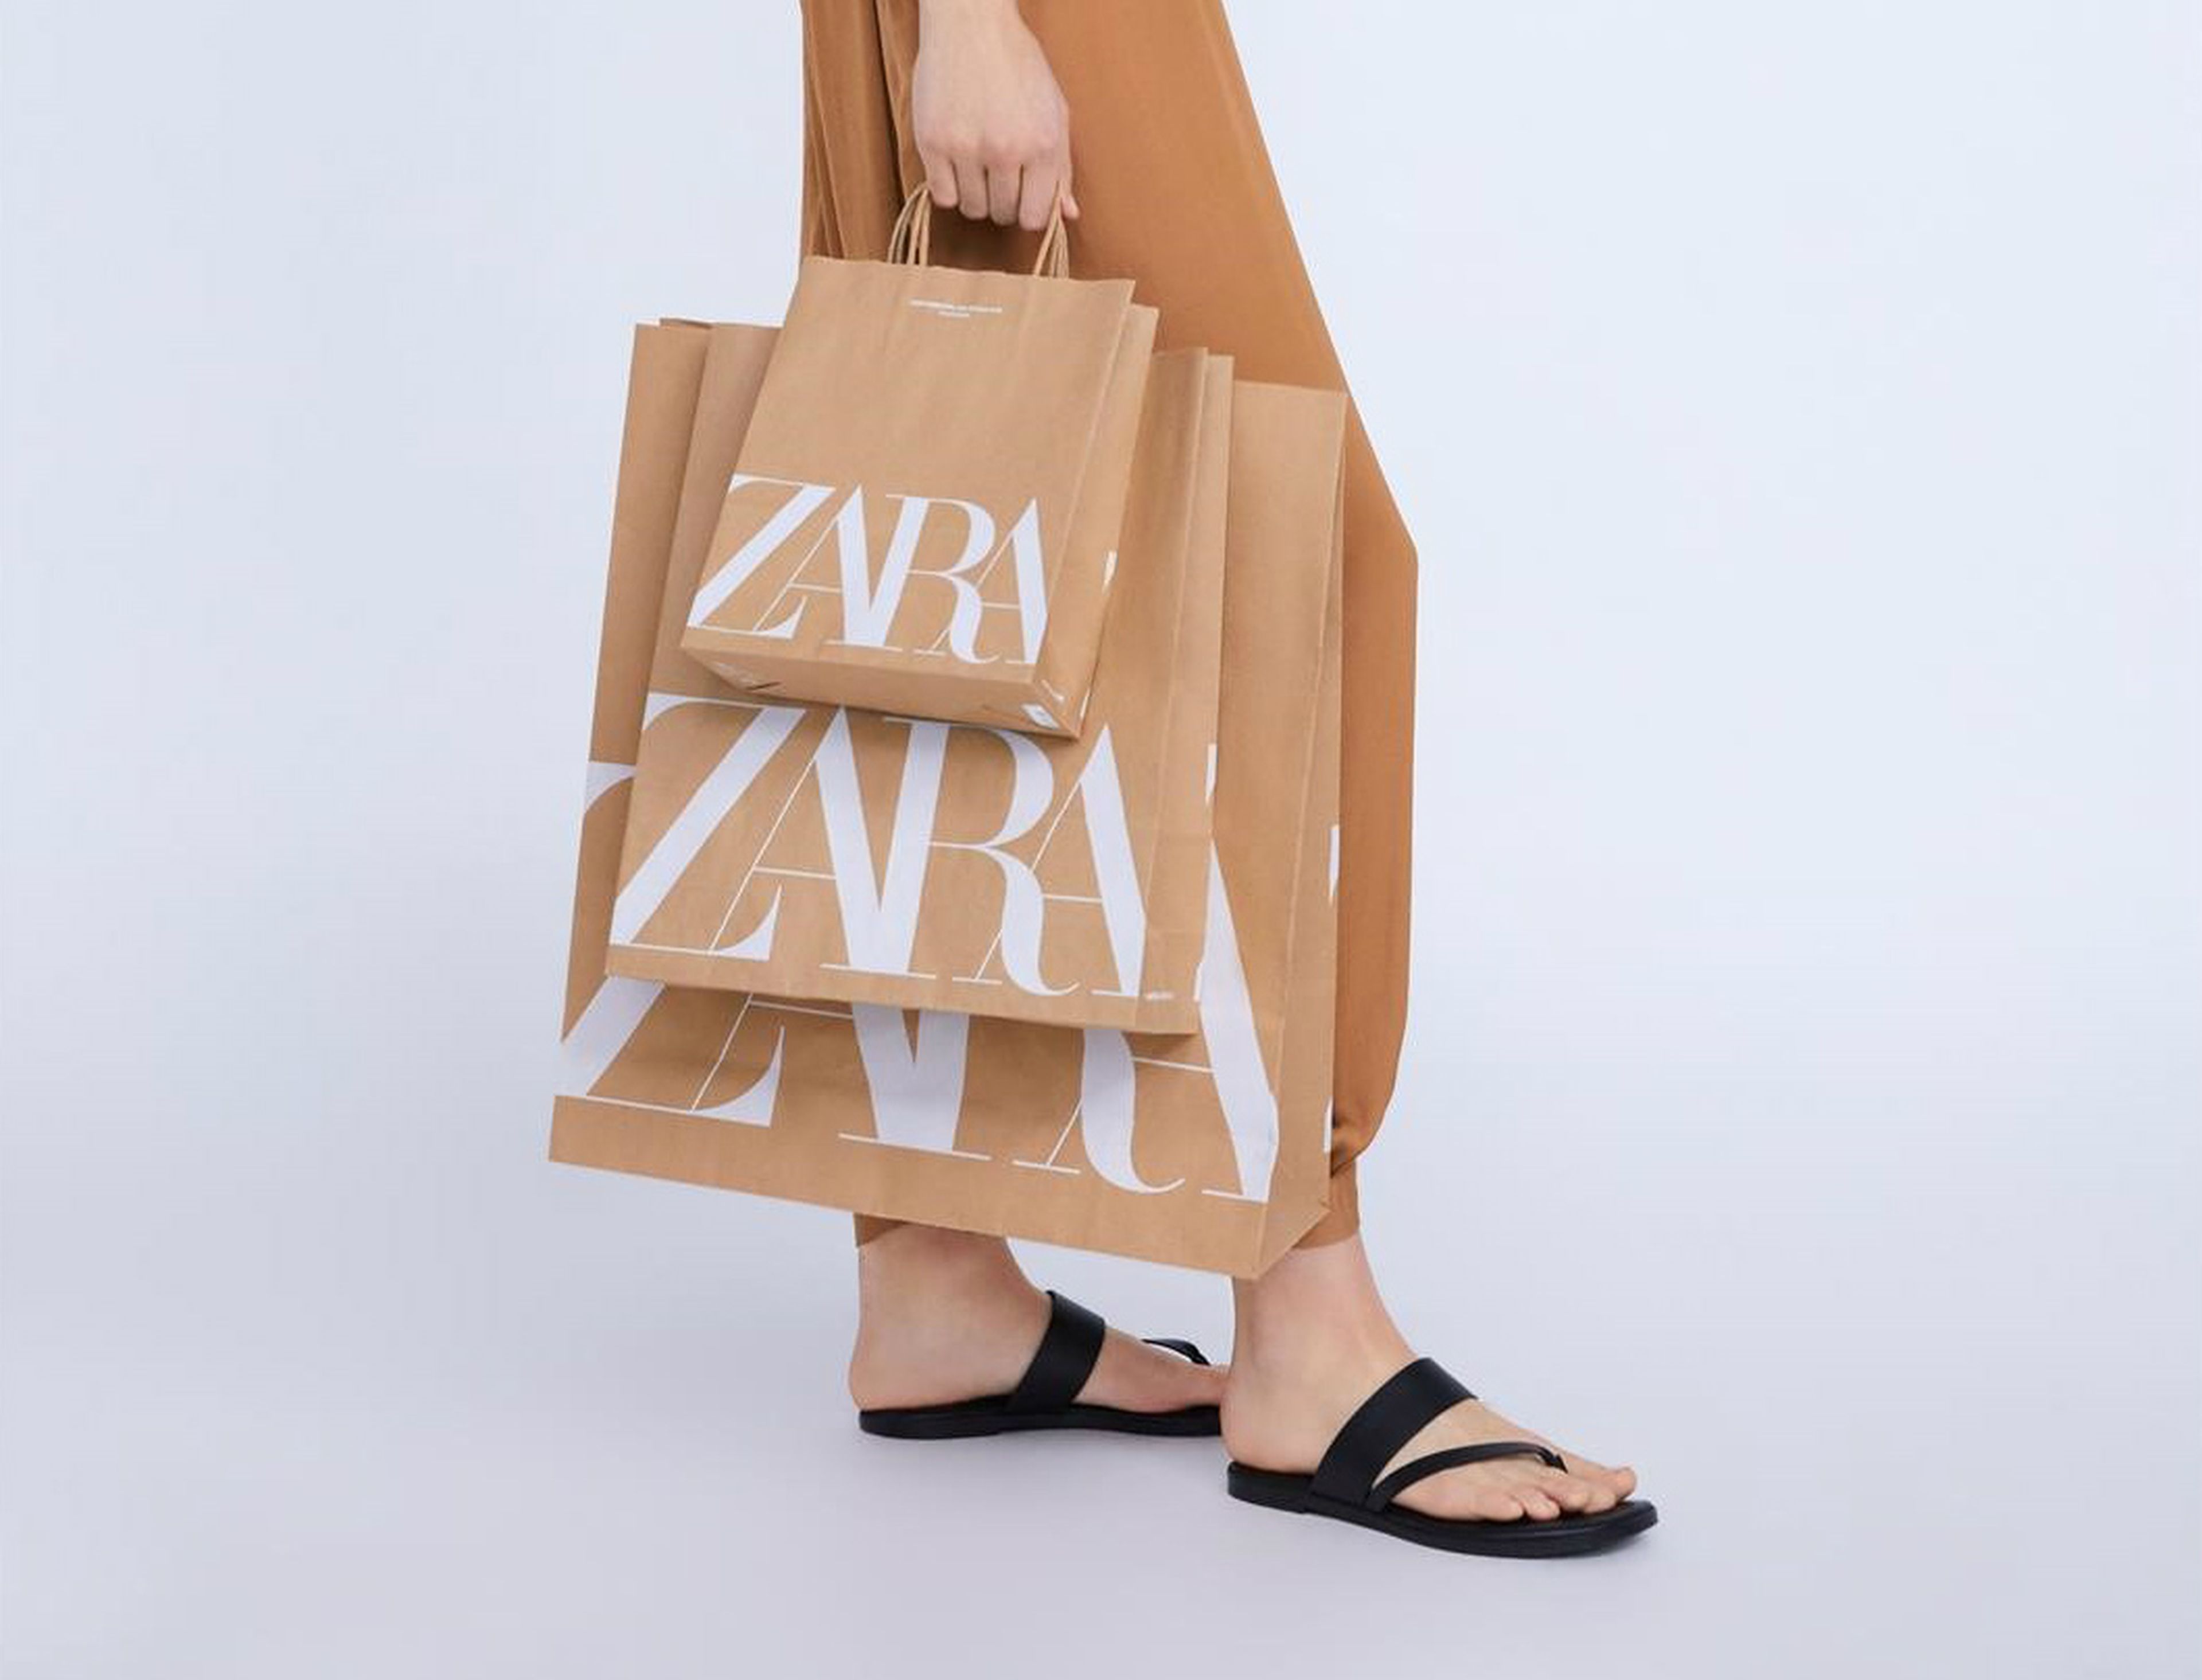 Nueva bolsa de Zara de papel con el nuevo logo.